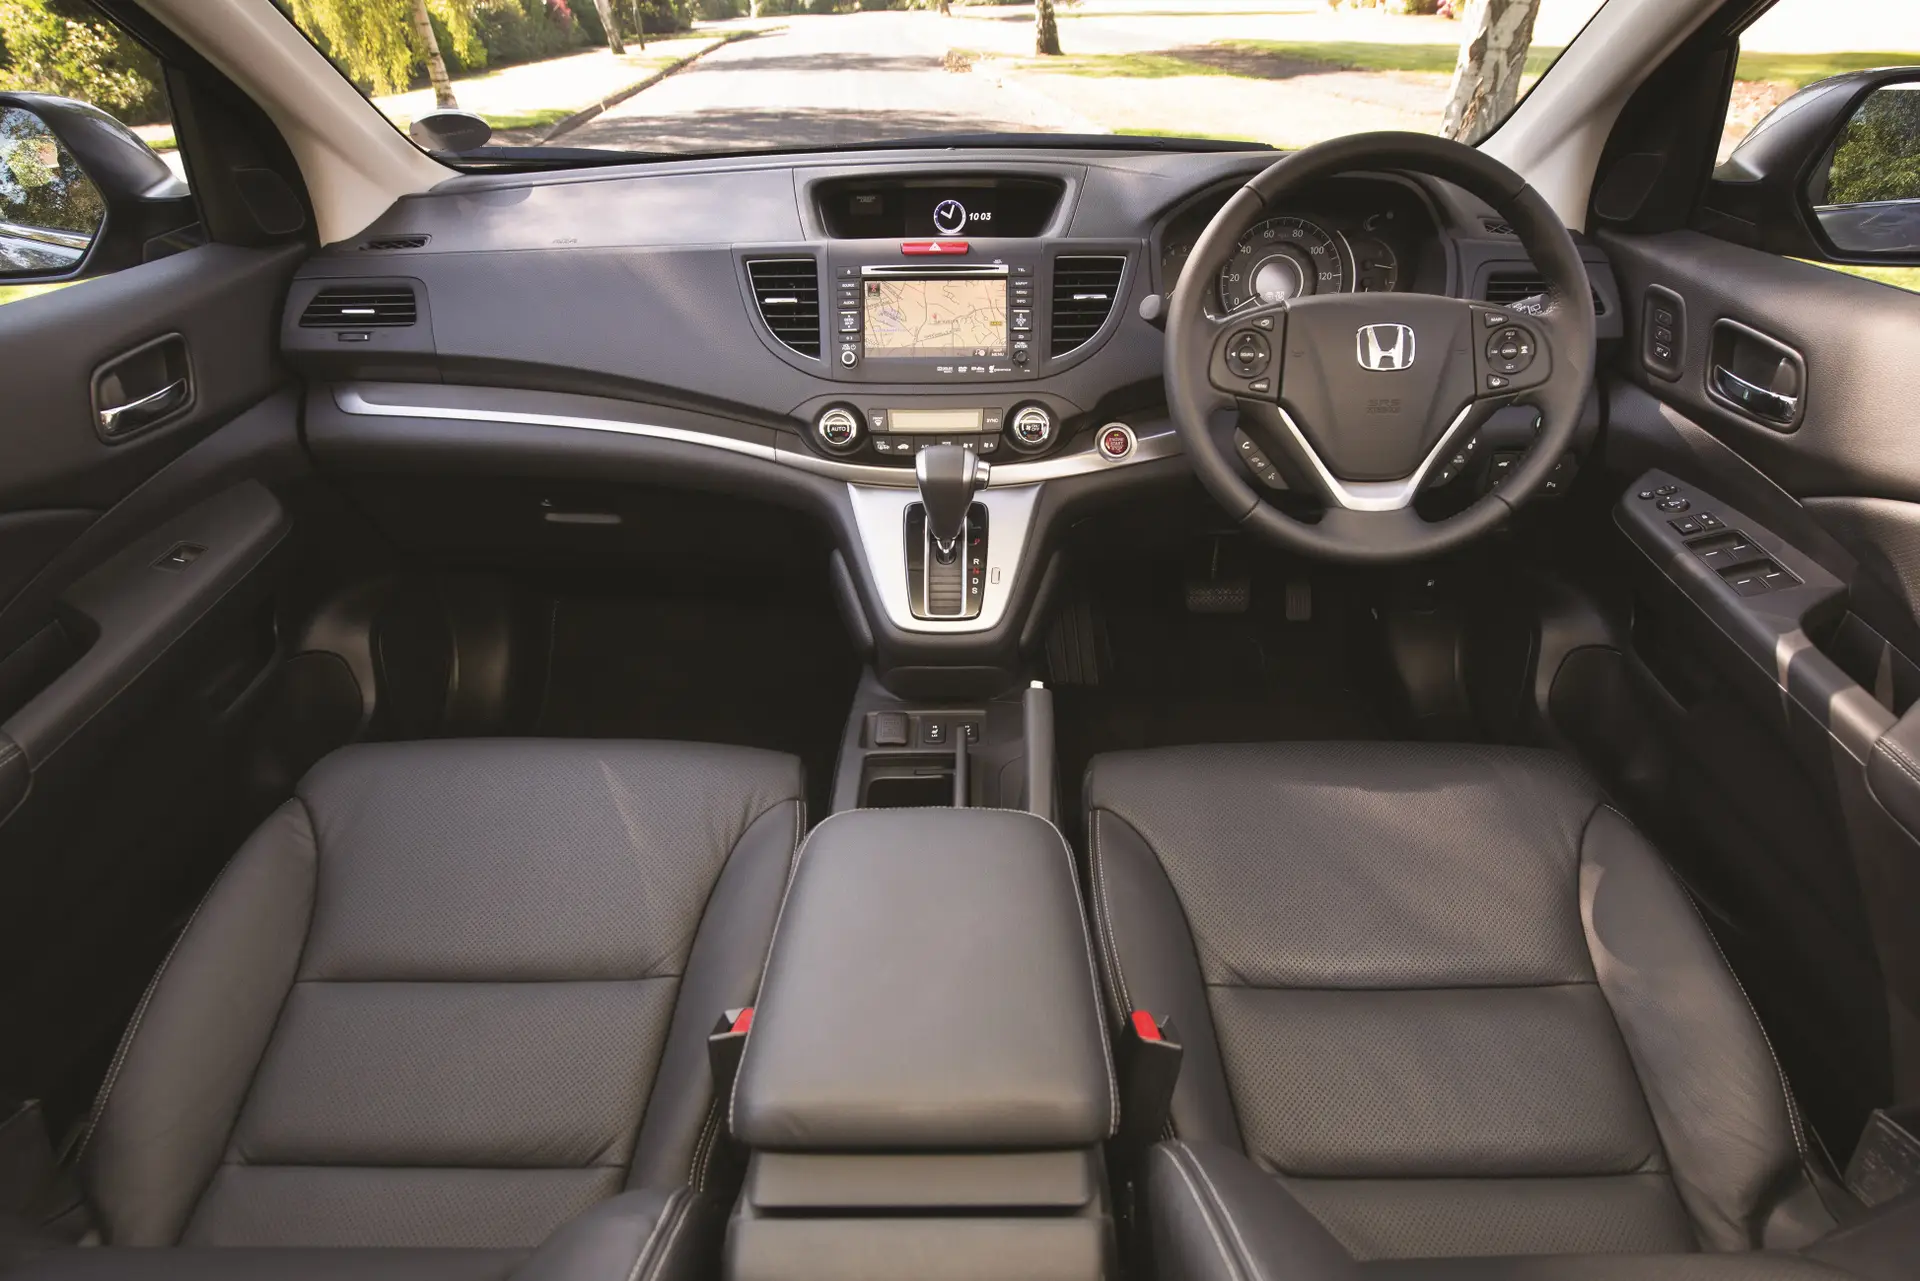 Honda CR-V (2012-2018) Review: interior close up photo of the Honda CR-V dashboard